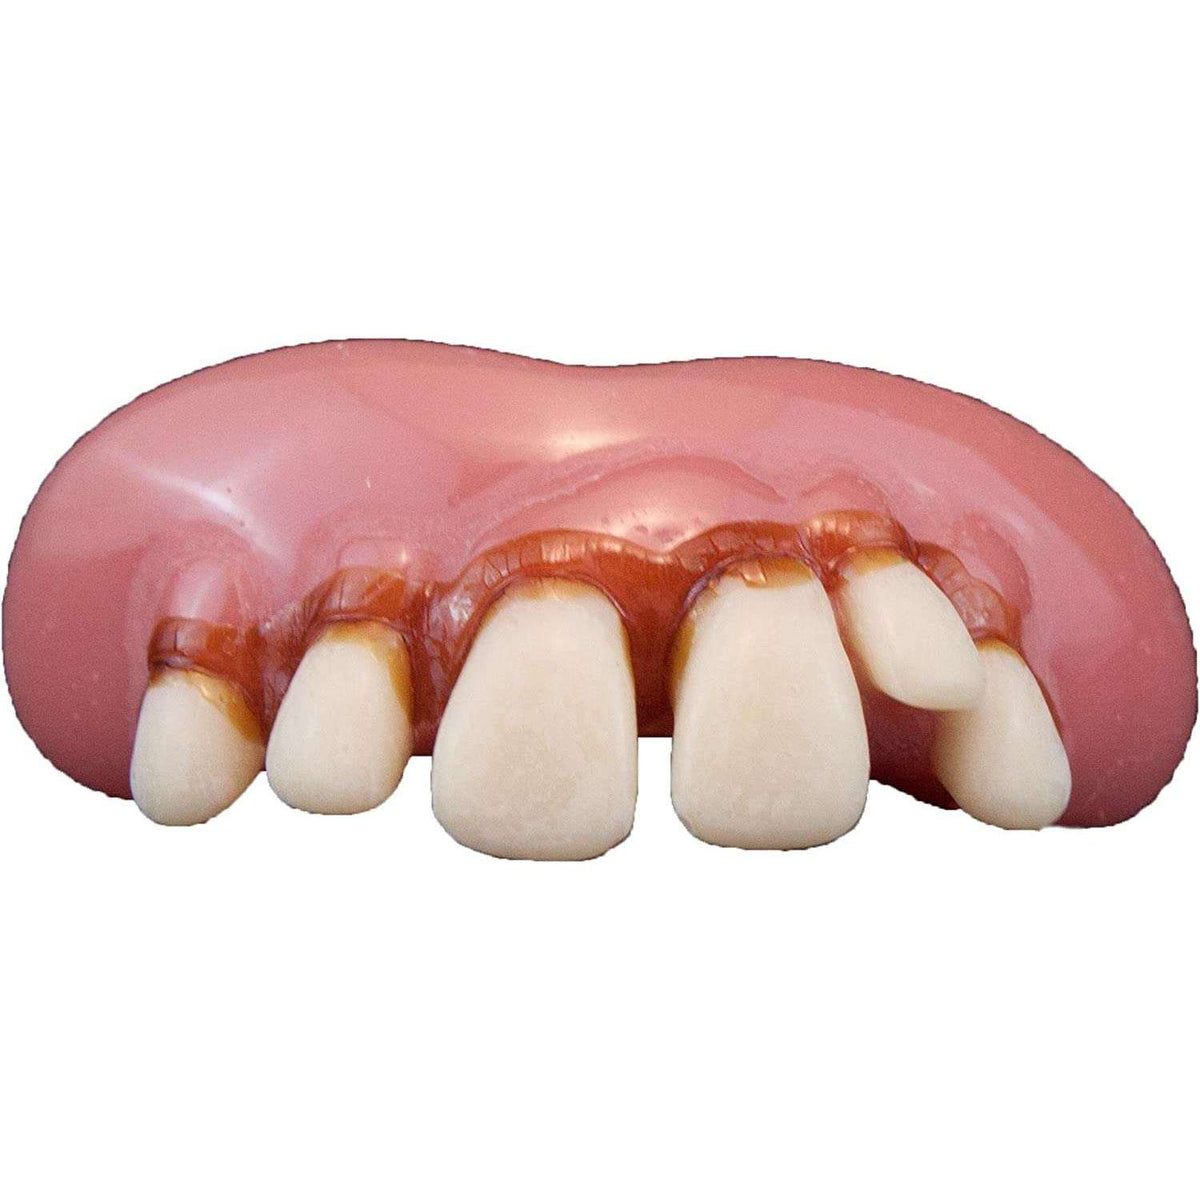 Big Cletus Teeth